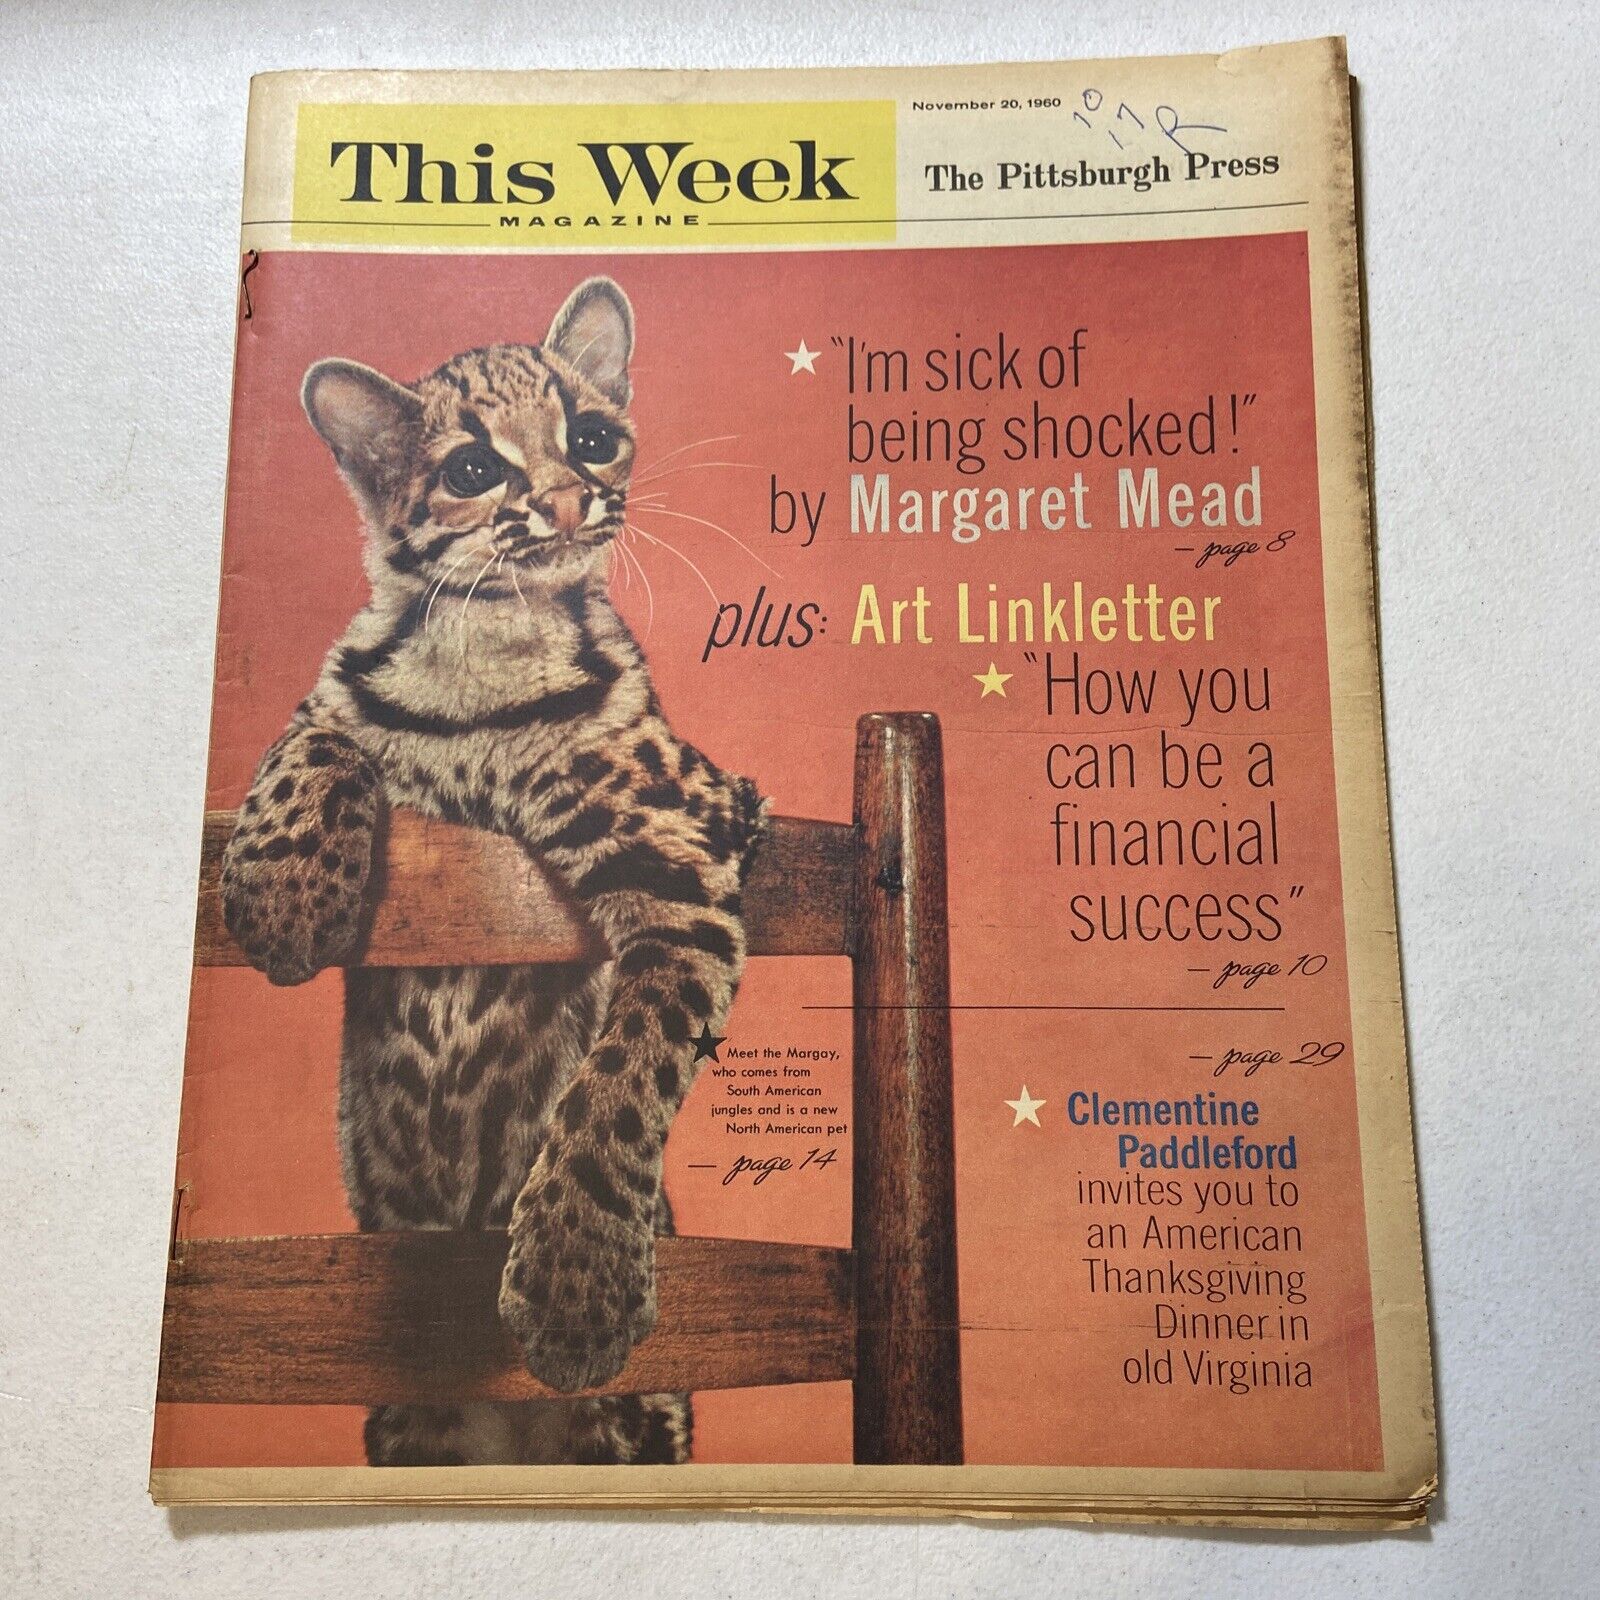 THIS WEEK Magazine - November 20, 1960 - Art Linkletter, Margaret Mead, Japan